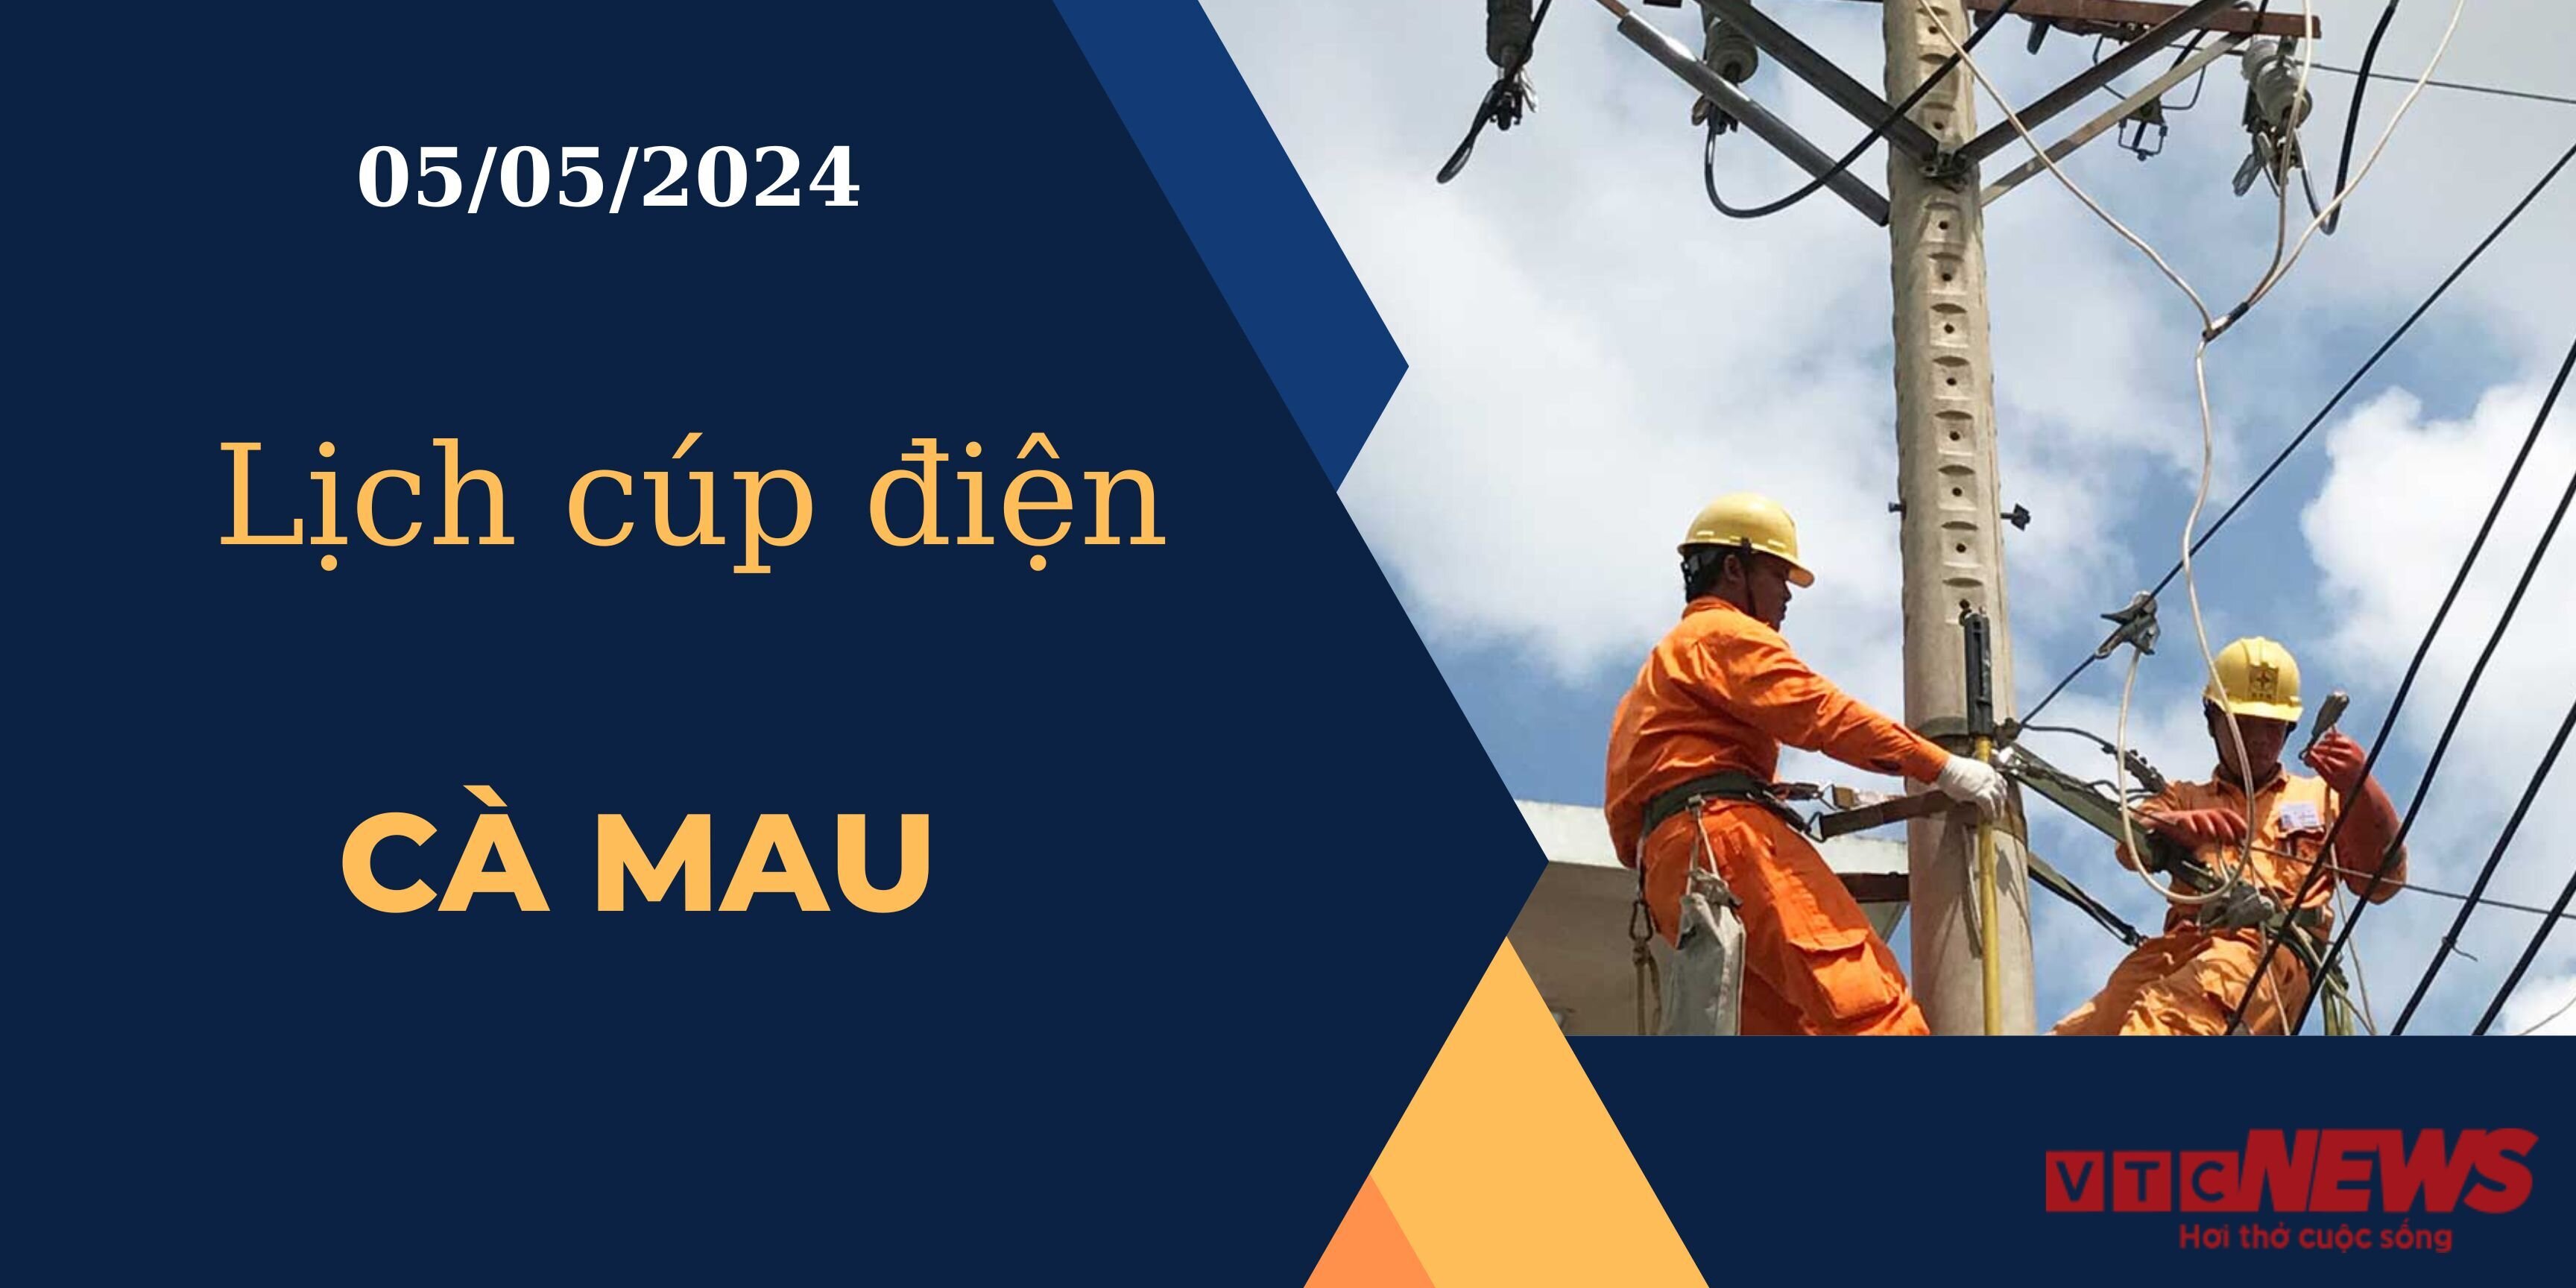 Lịch cúp điện hôm nay ngày 05/05/2024 tại Cà Mau